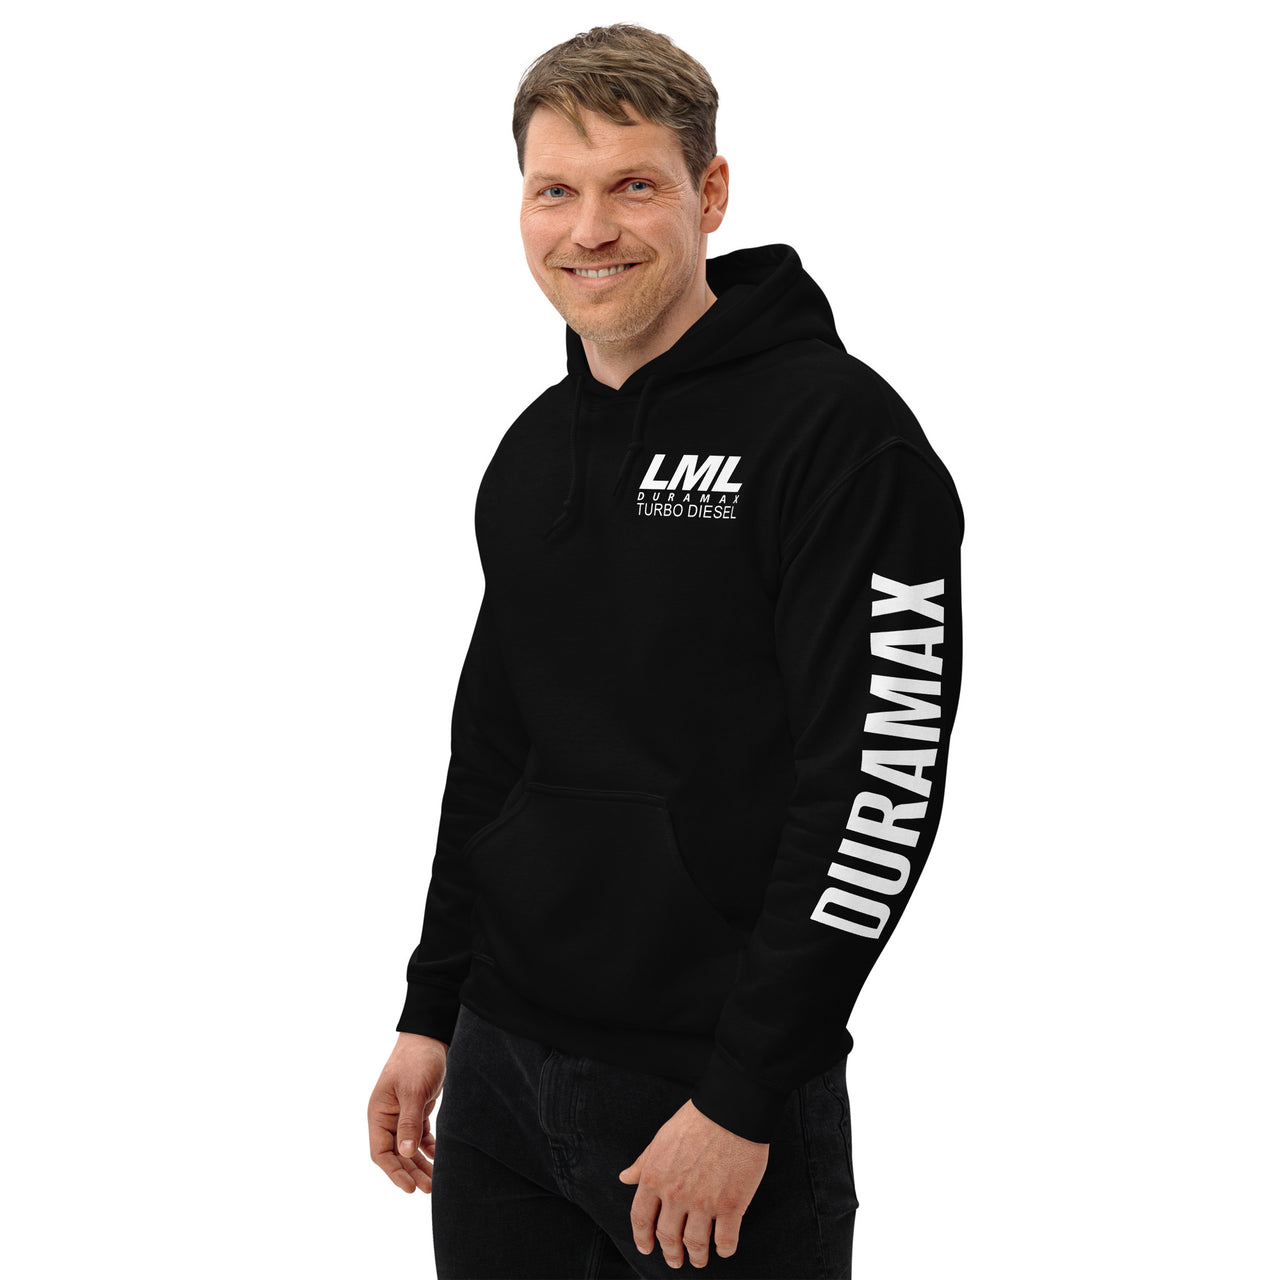 LML Duramax Hoodie Pullover Sweatshirt With Sleeve Print modeled in black